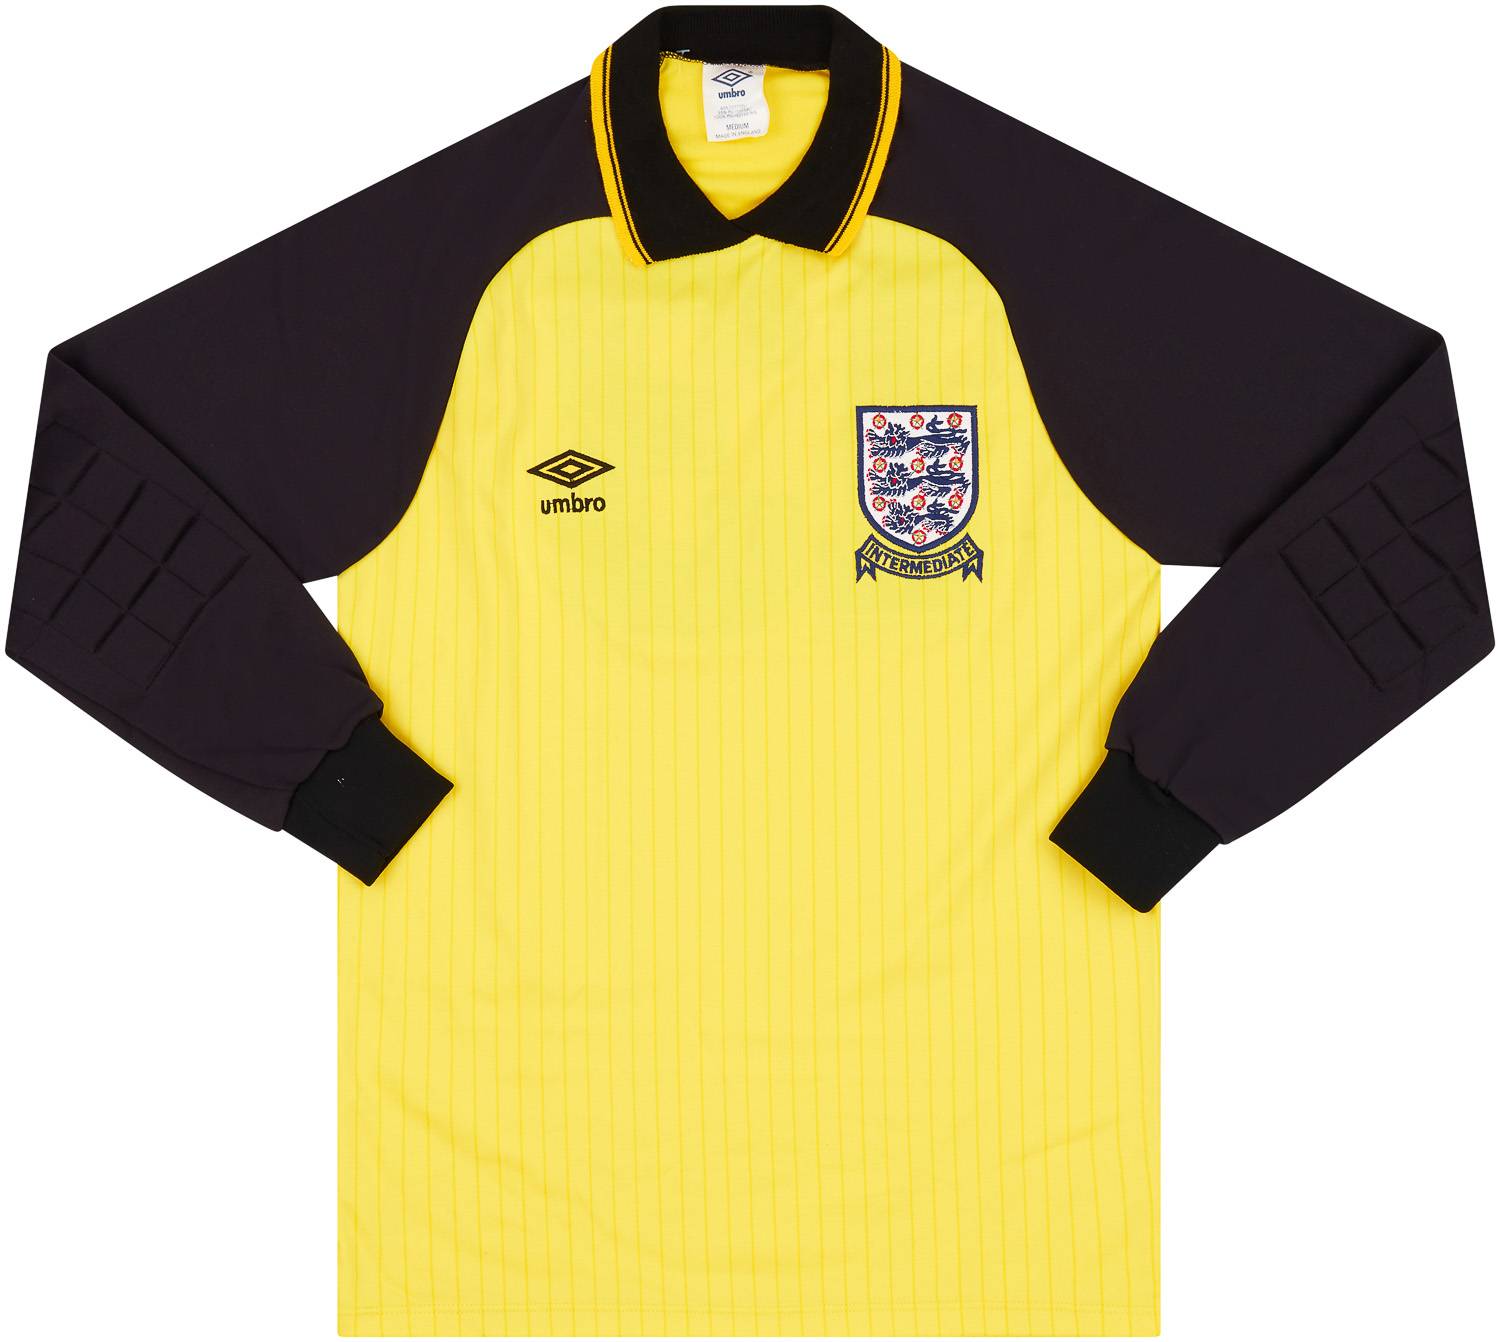 1985-86 England U-21 Match Issue GK Shirt #13 (Mimms)